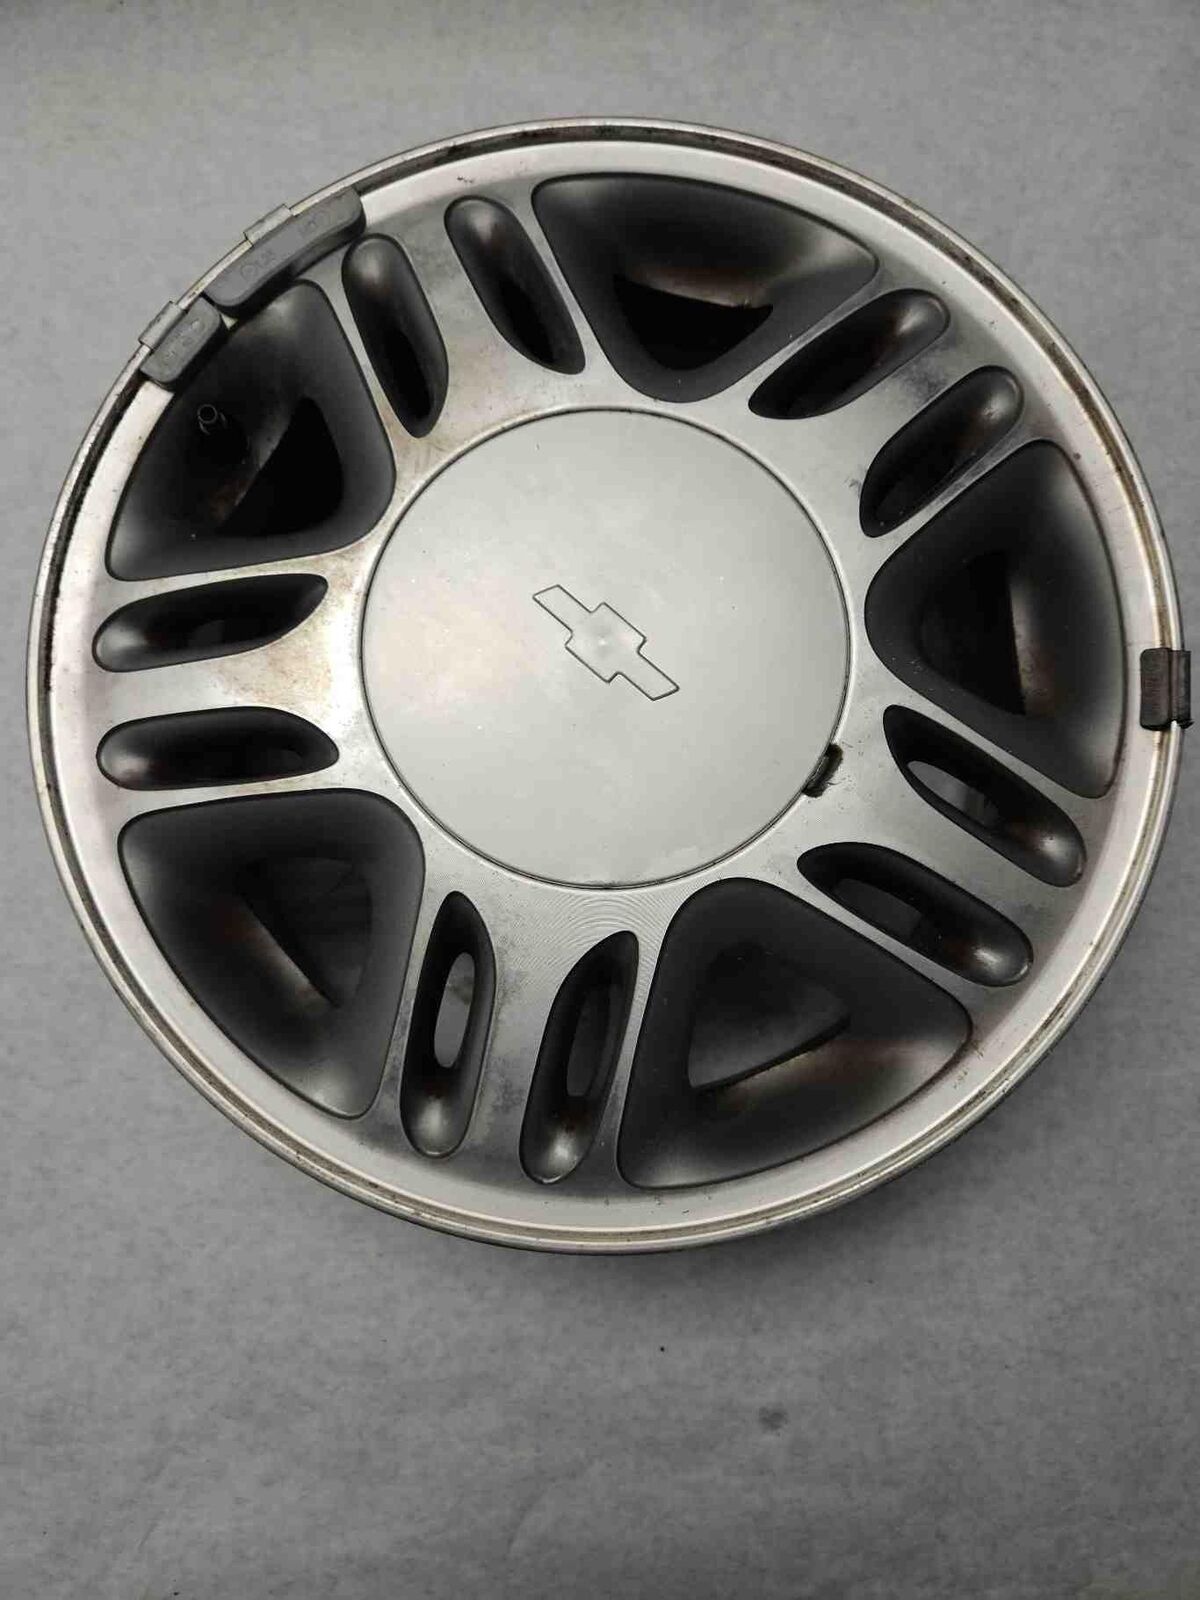 1997 98 99 00 01 02 03 04 05 CHEVY VENTURE Wheel Aluminum Alloy Rim 15x6